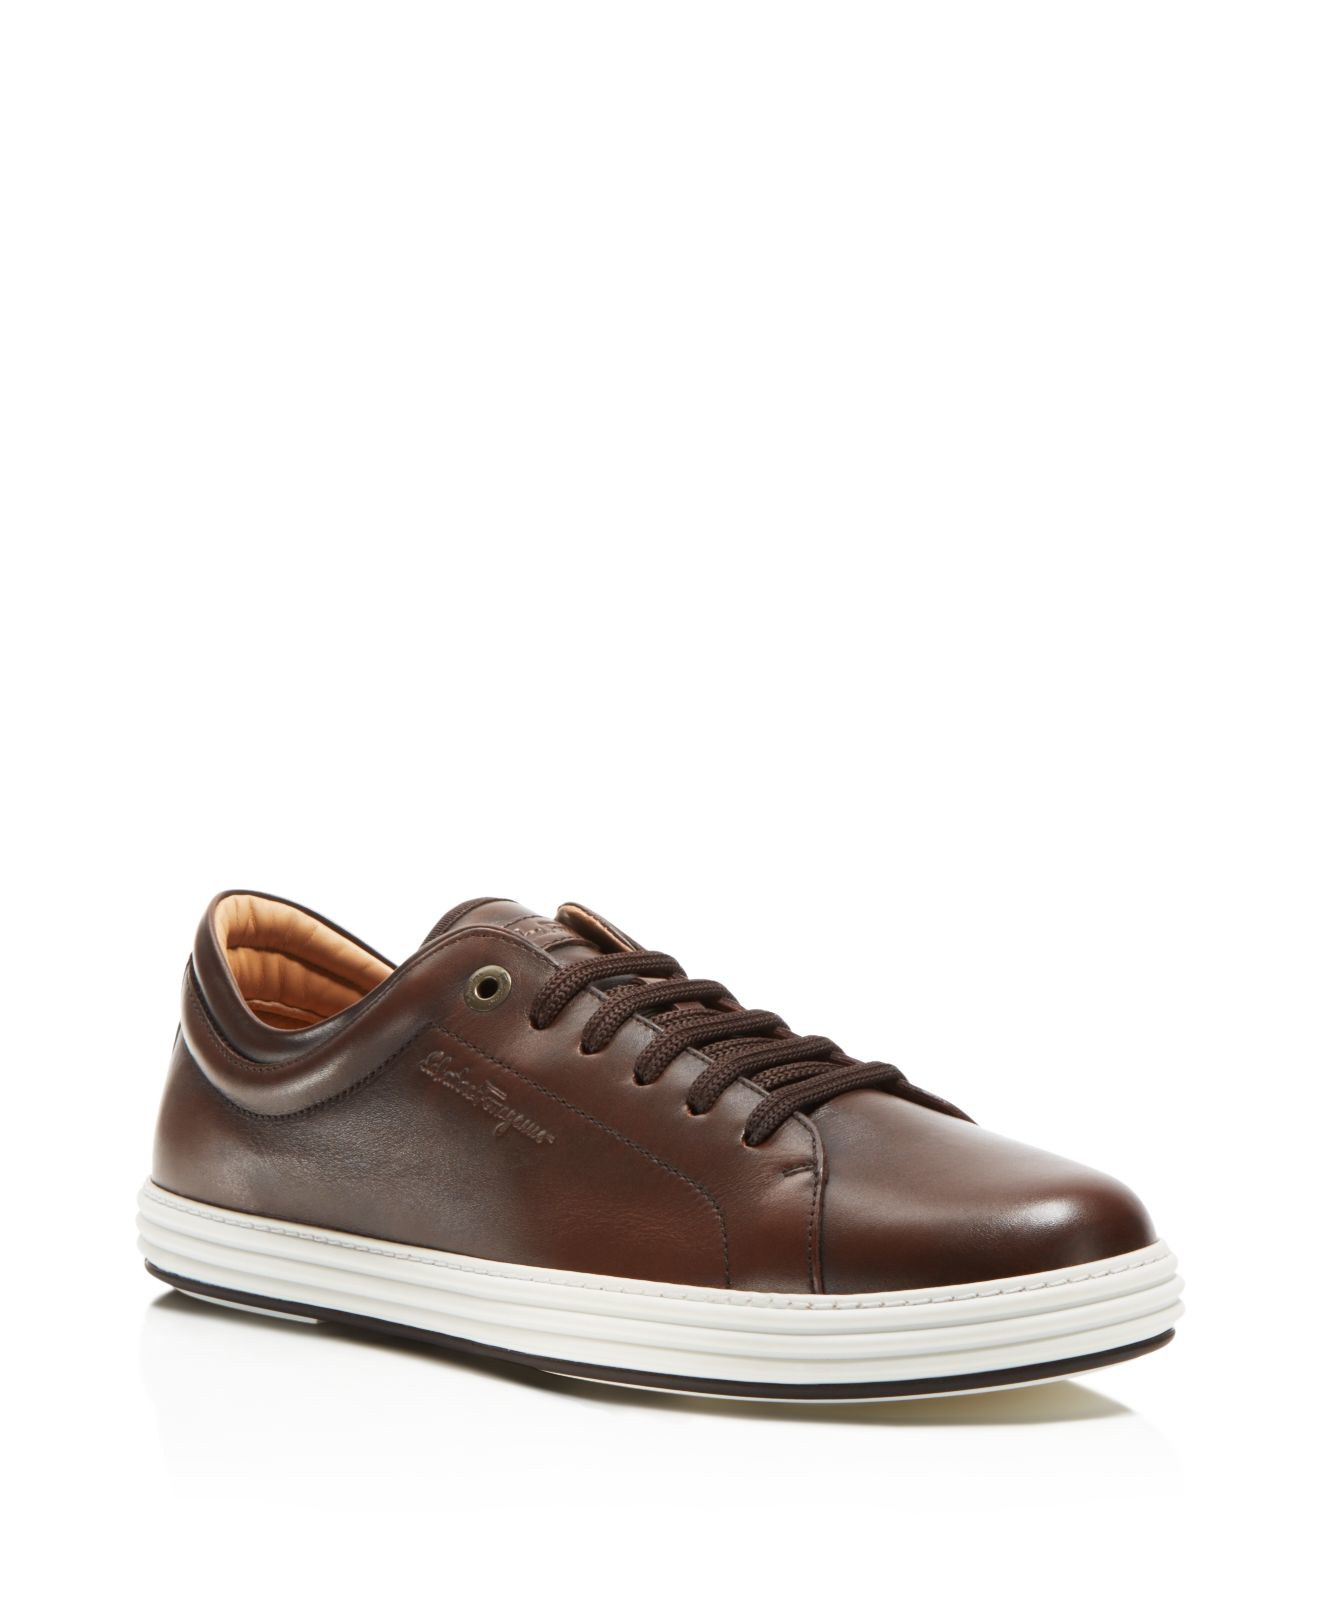 Lyst - Ferragamo Newport Sneakers in Brown for Men